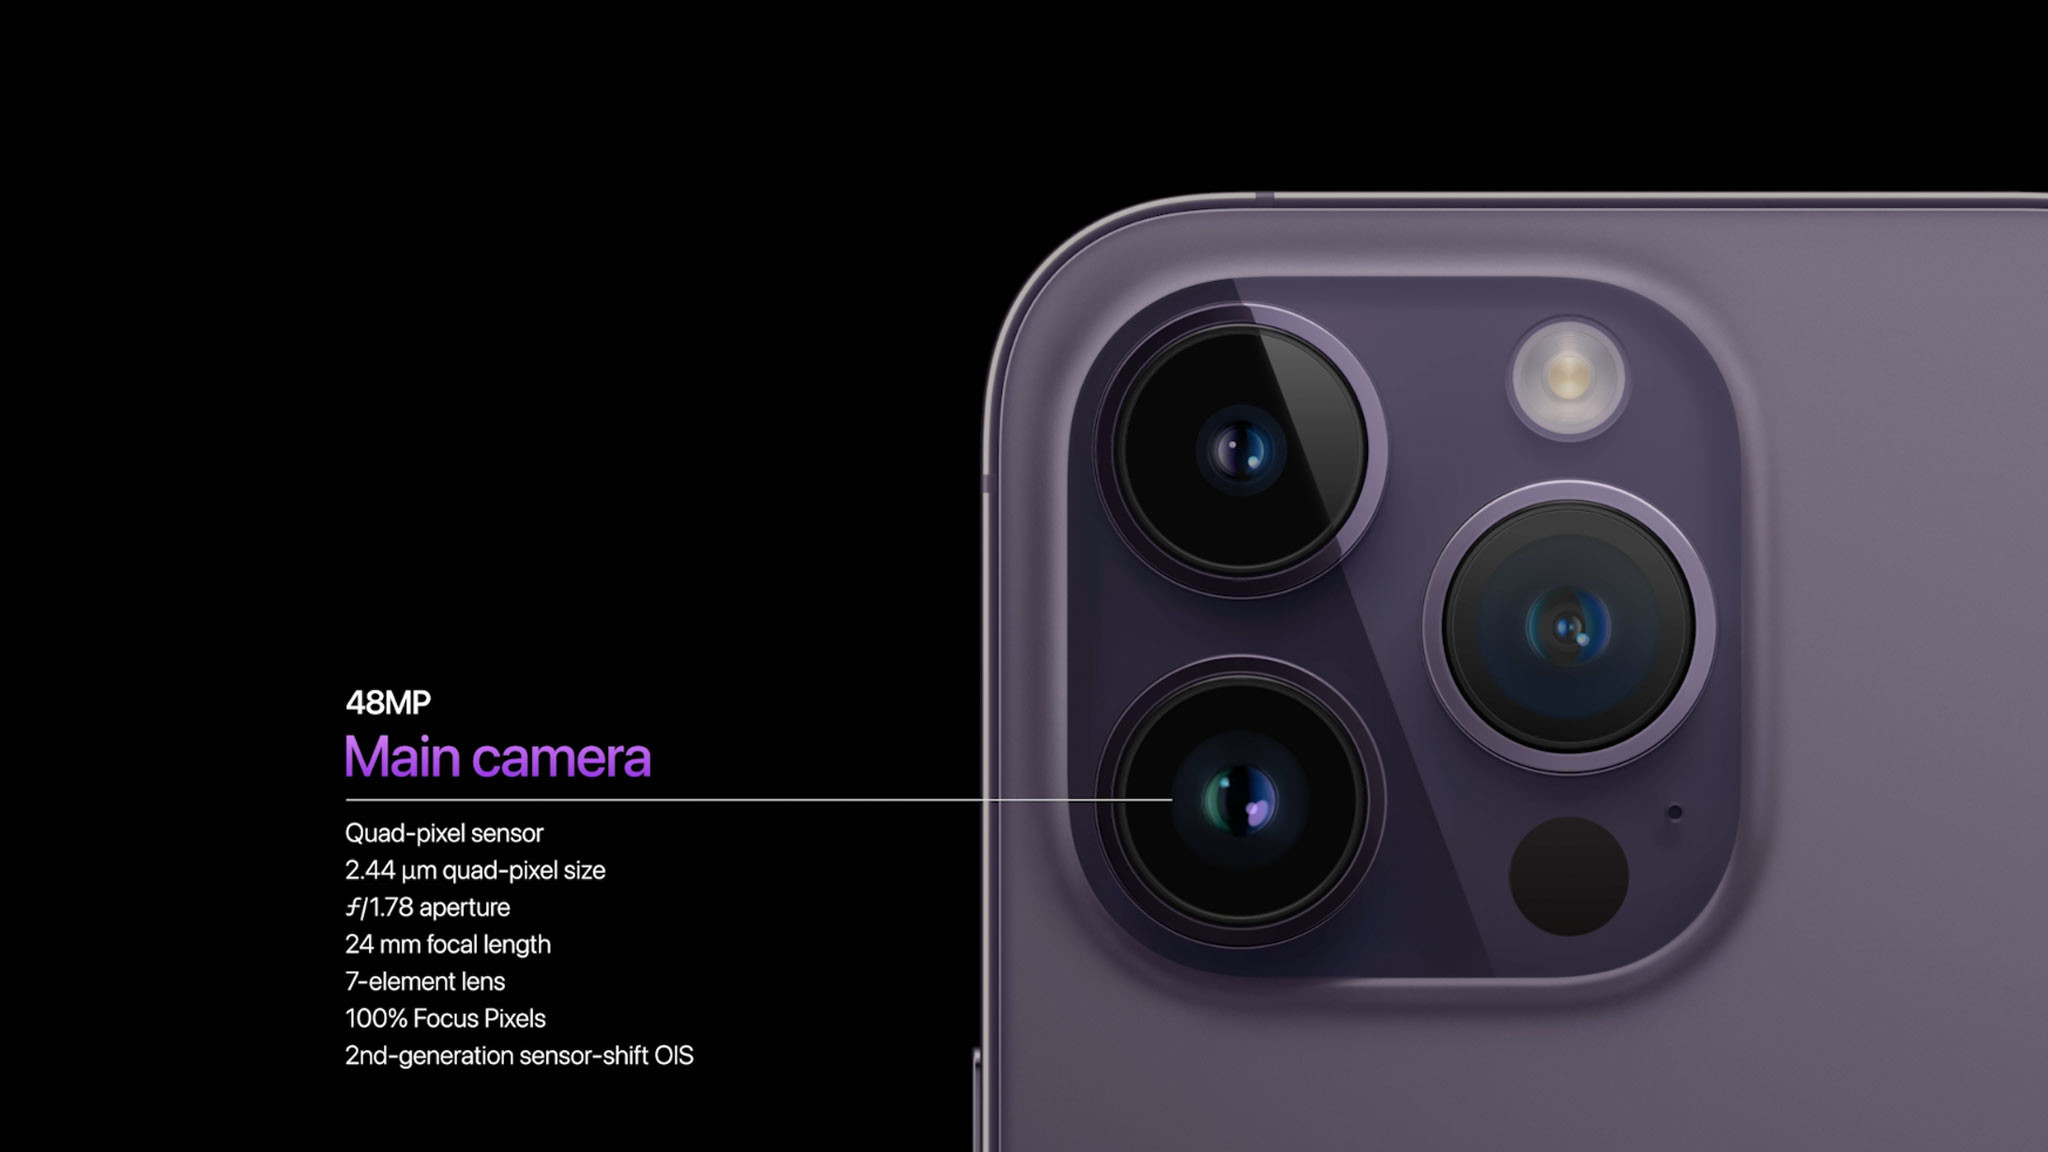 iPhone 12 Kameraschutz im Test - Taugt das überhaupt was? - Case